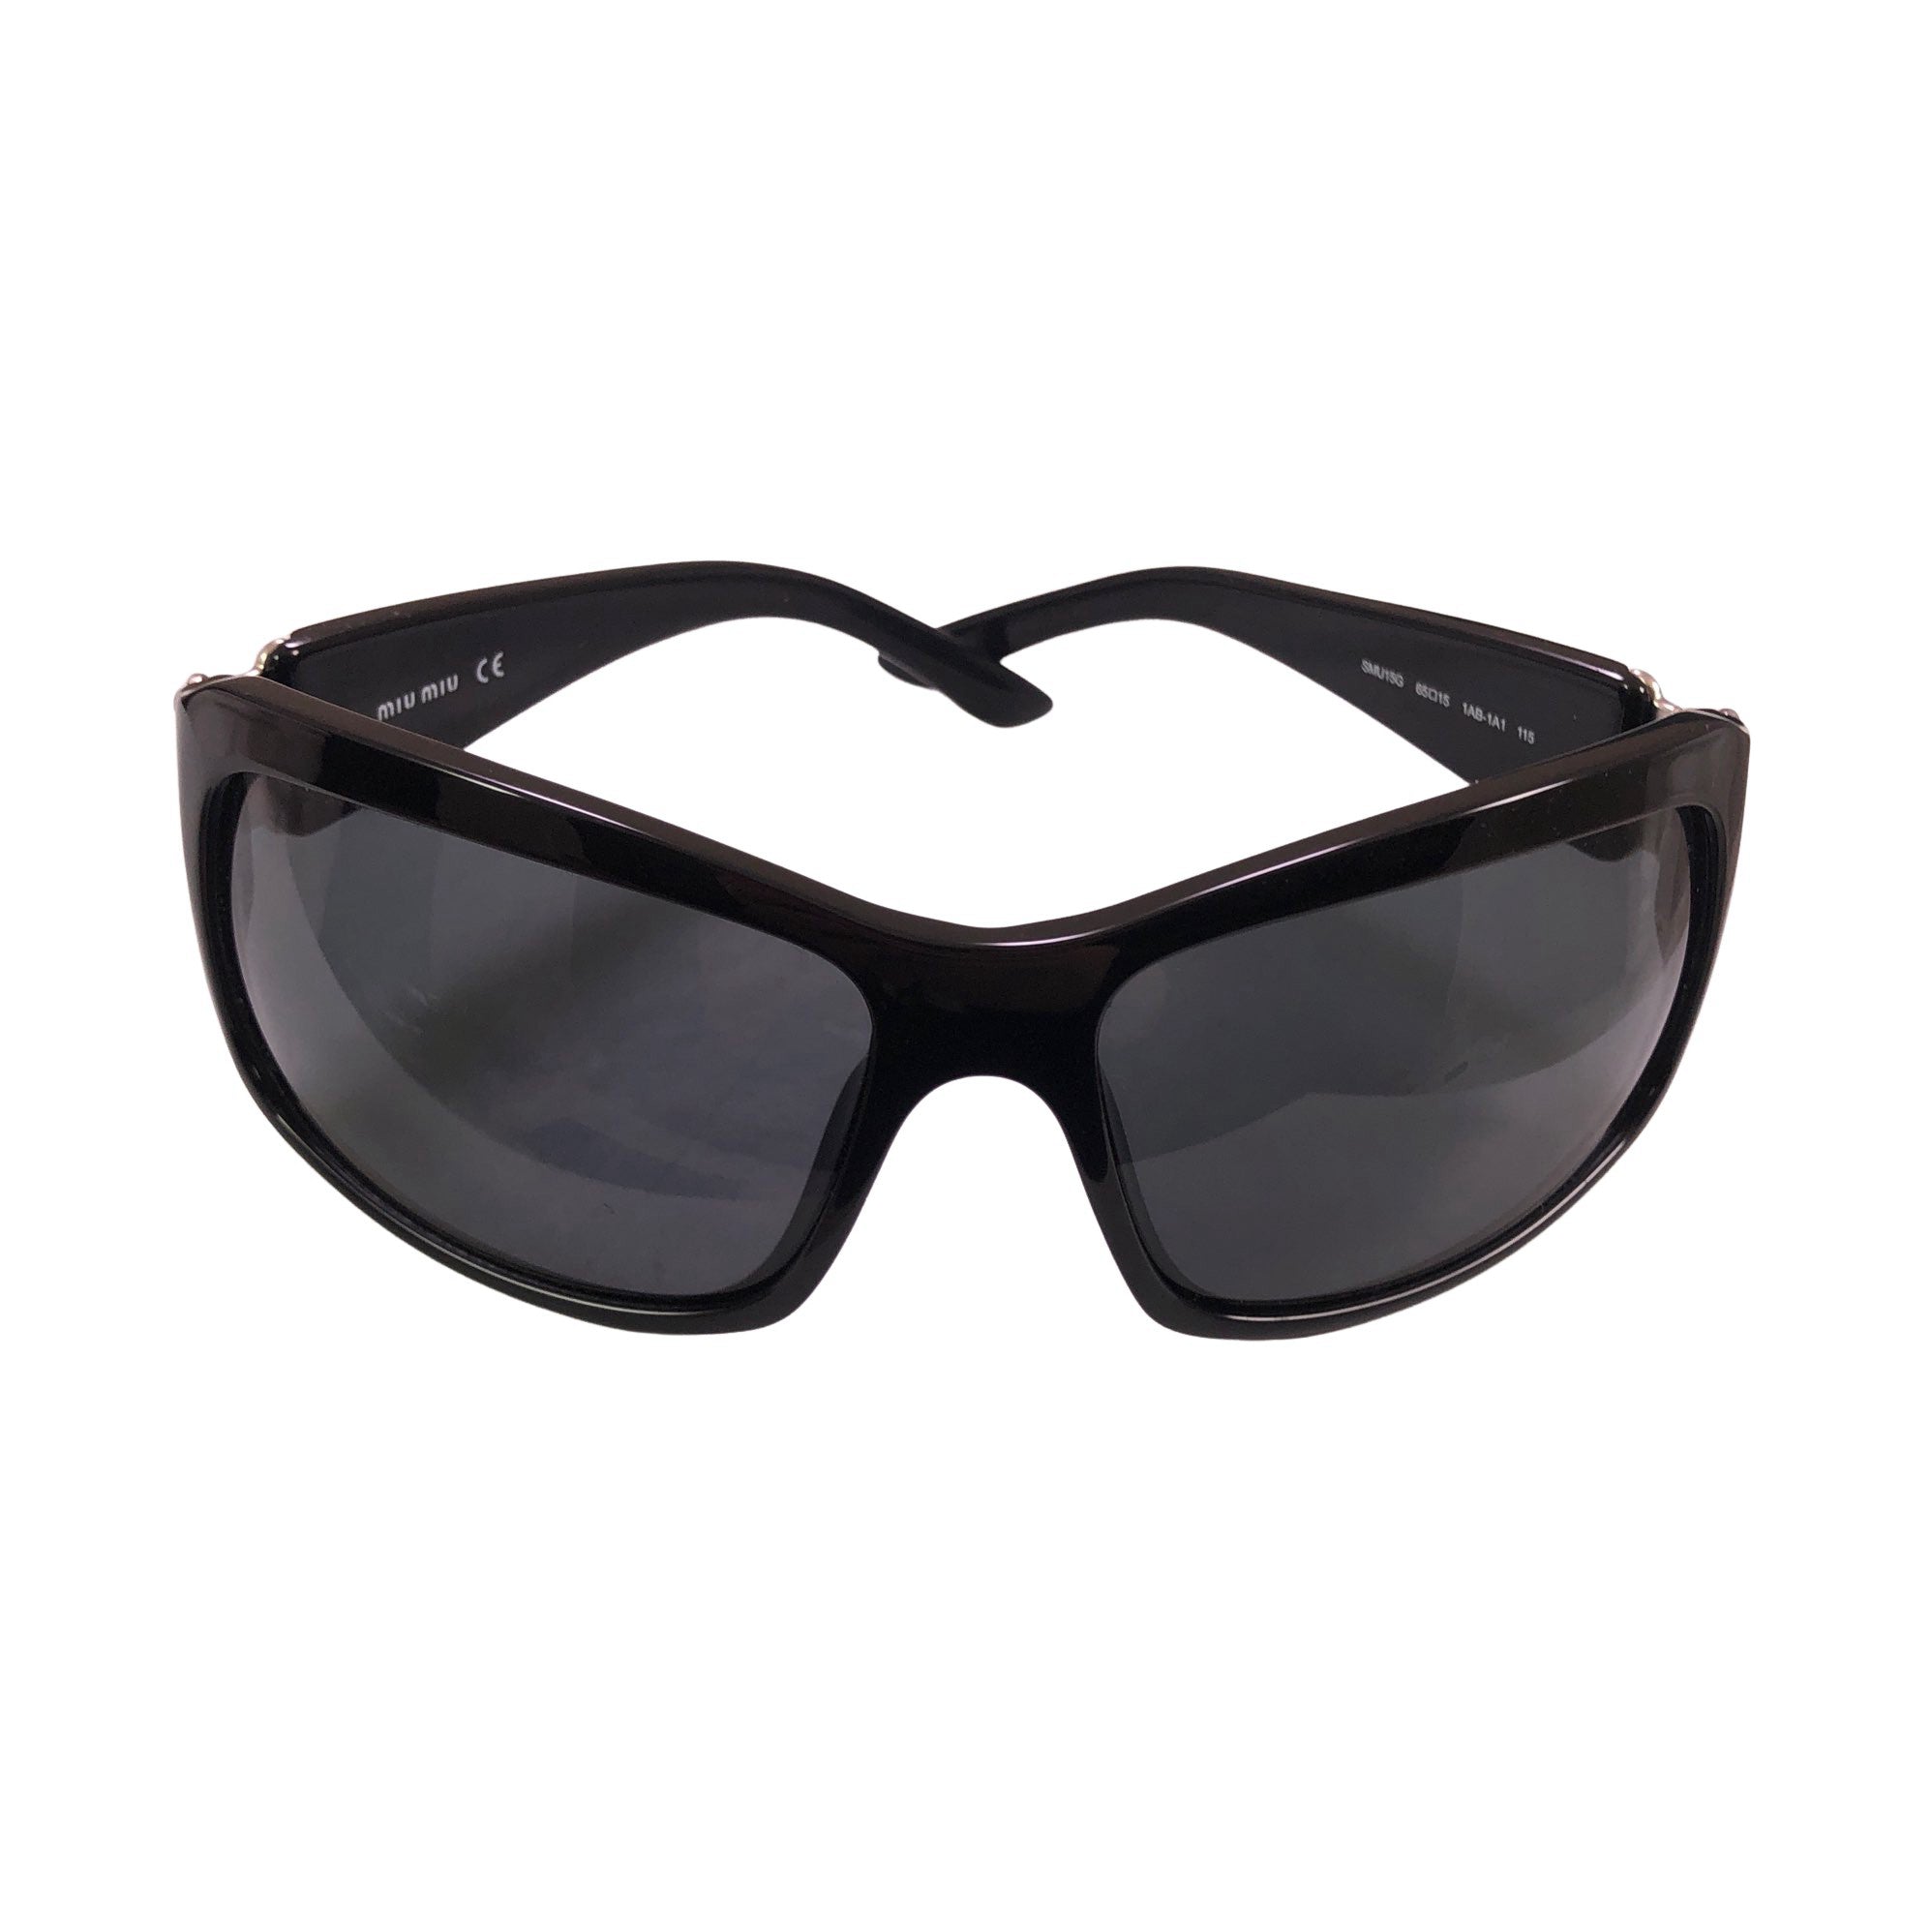 Women's Miu Miu Sunglasses, size Ei kokoa (Black)